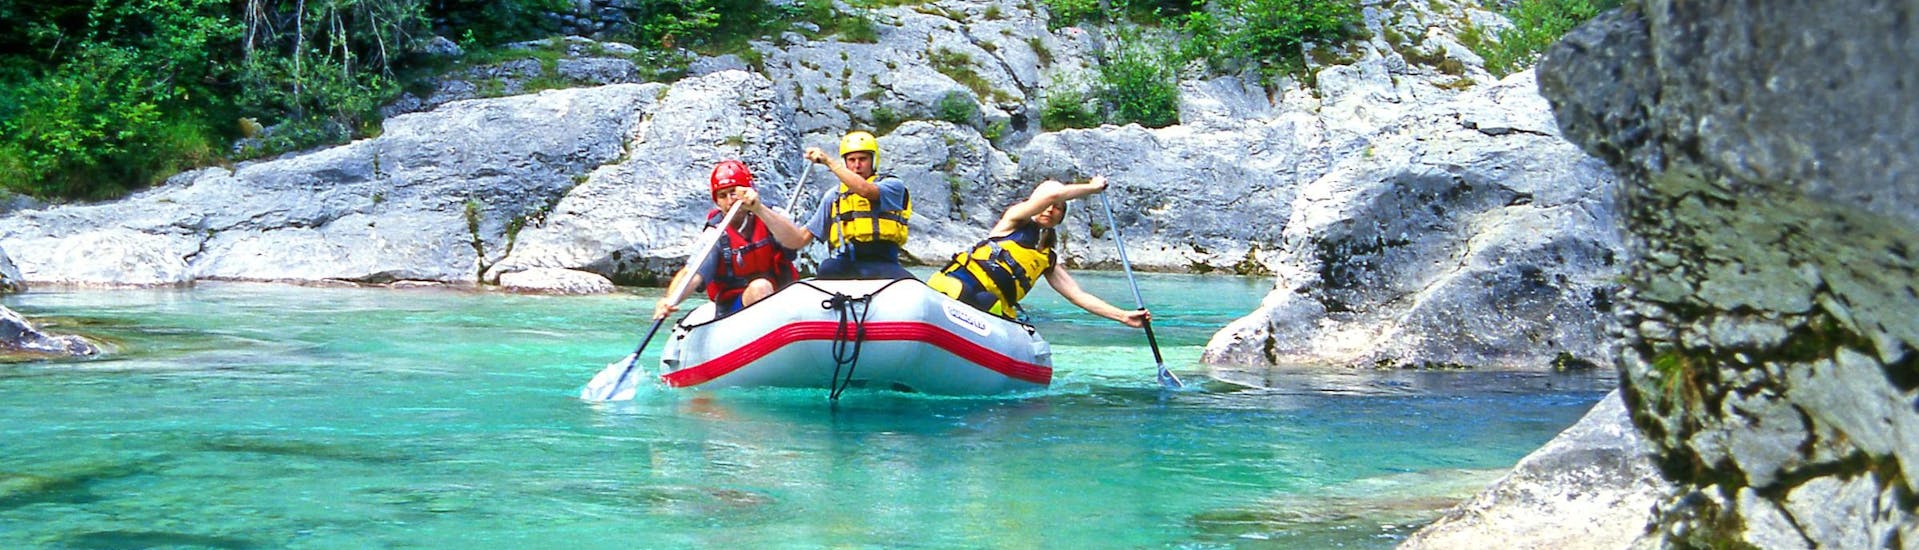 Un grupo de jóvenes disfruta haciendo rafting en Fratarca, popular destino para los deportes de agua y de aventura como el rafting y el descenso de barrancos.  